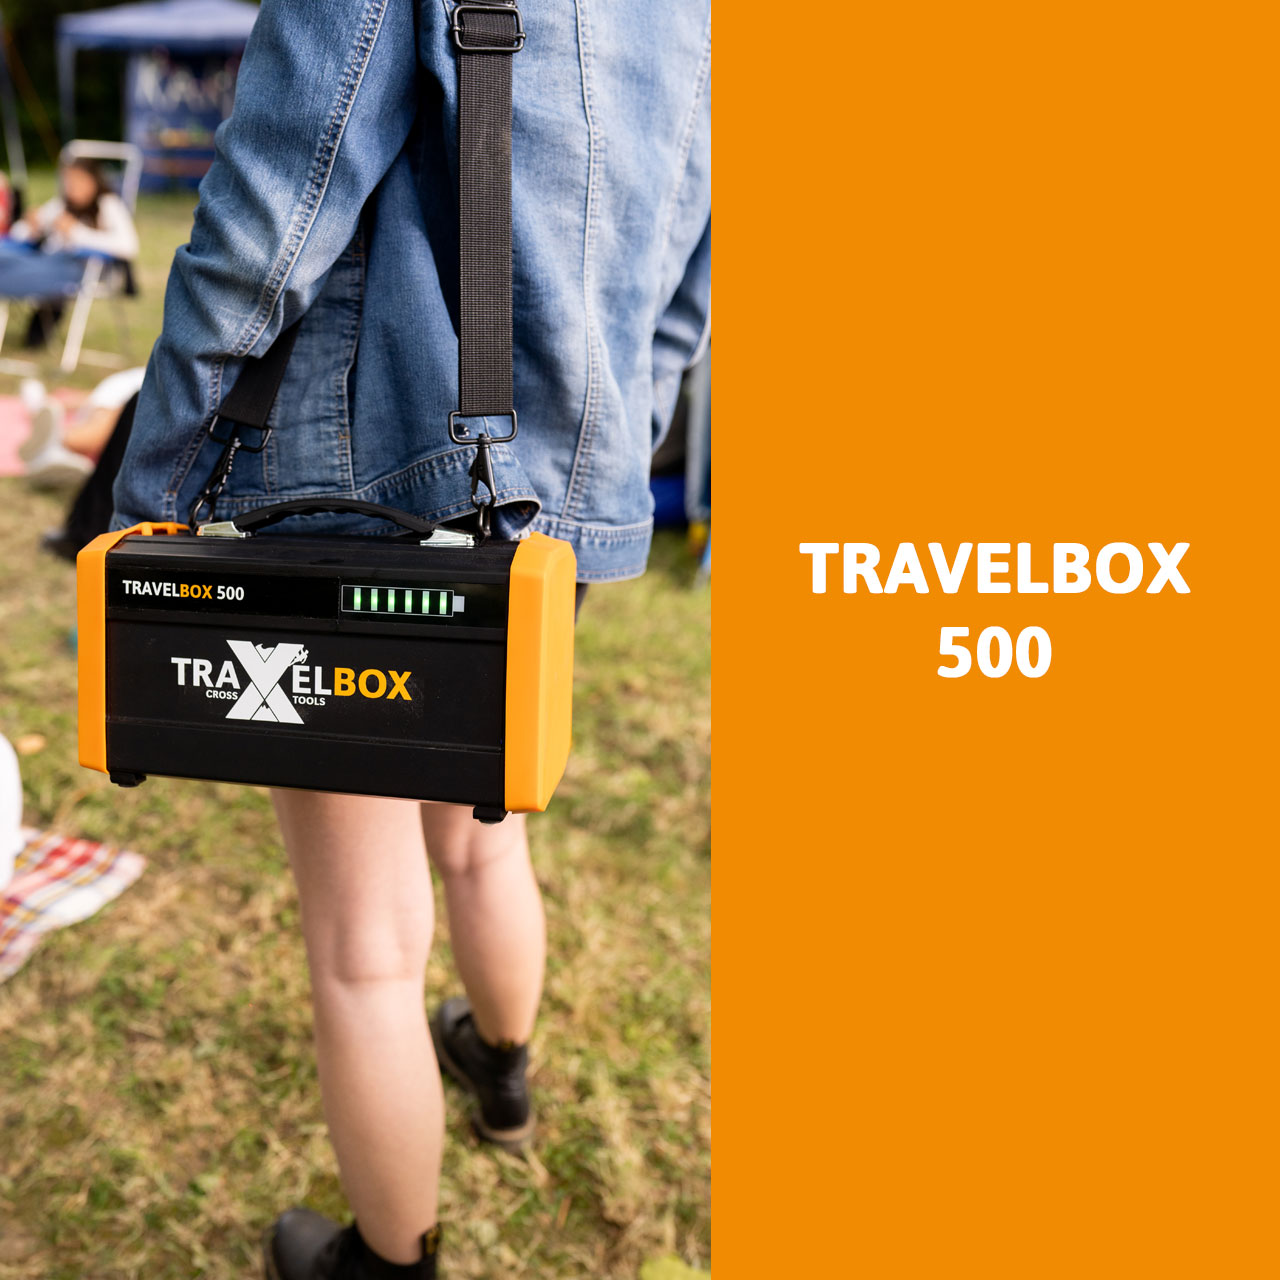 Akkubox TRAVELBOX 500+